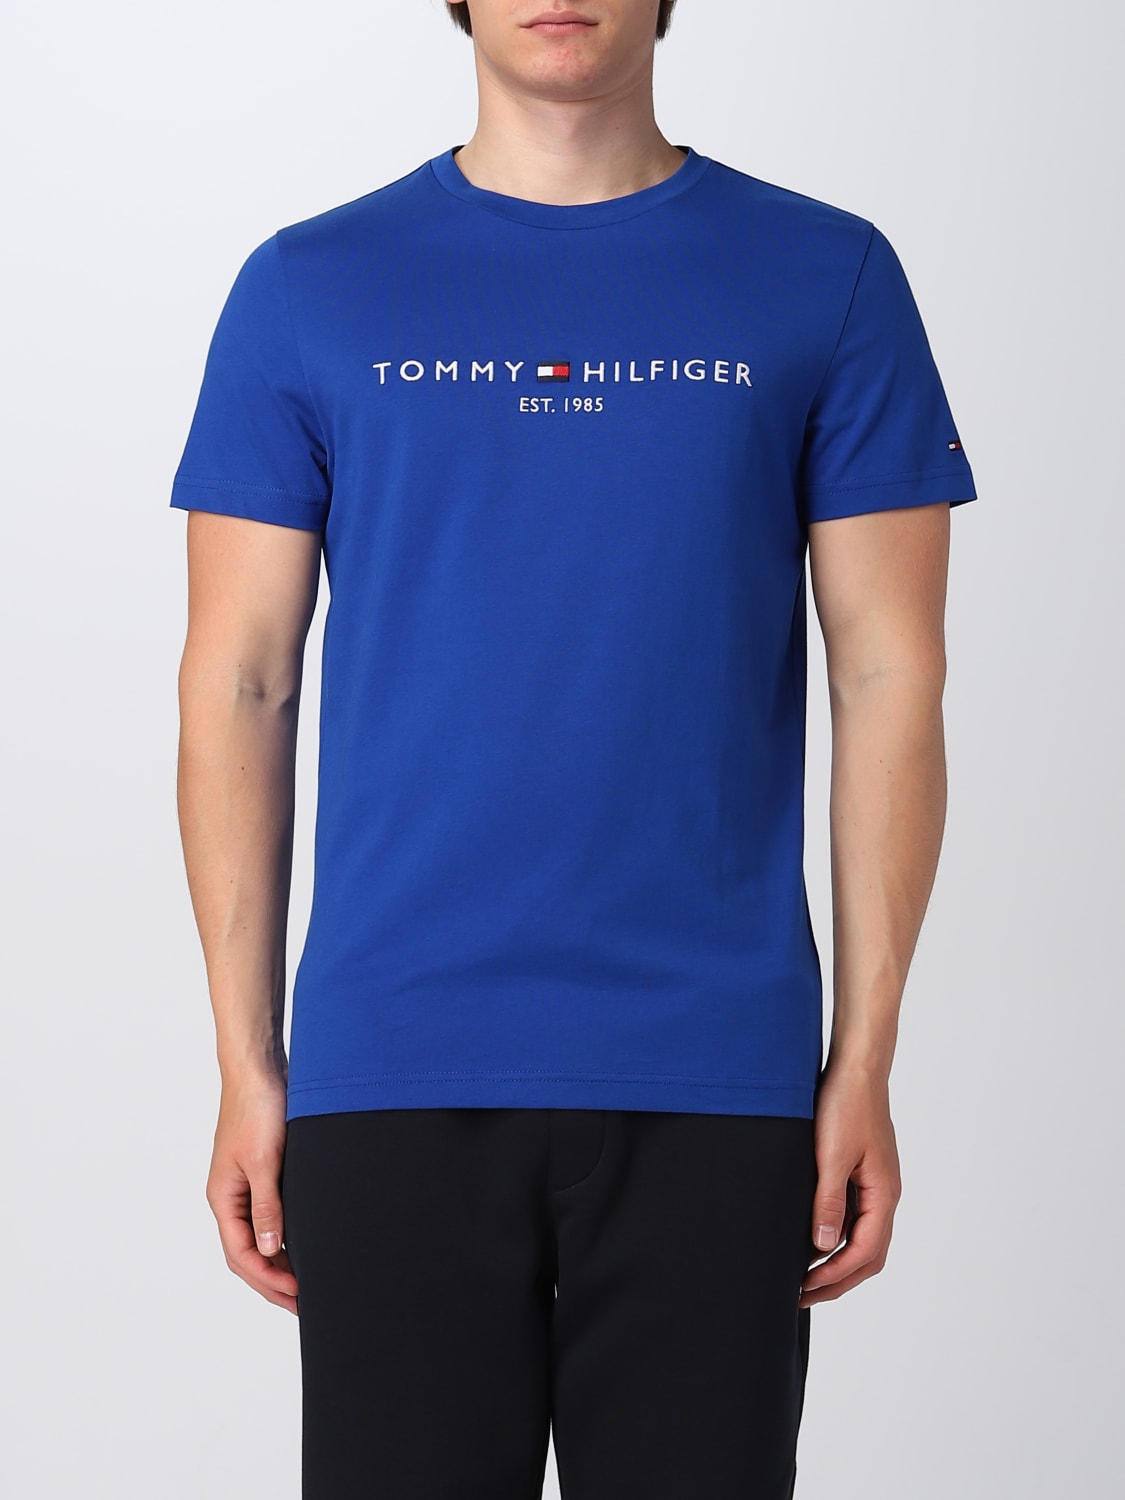 TOMMY HILFIGER: t-shirt for men - Royal Blue | Tommy Hilfiger t-shirt ...